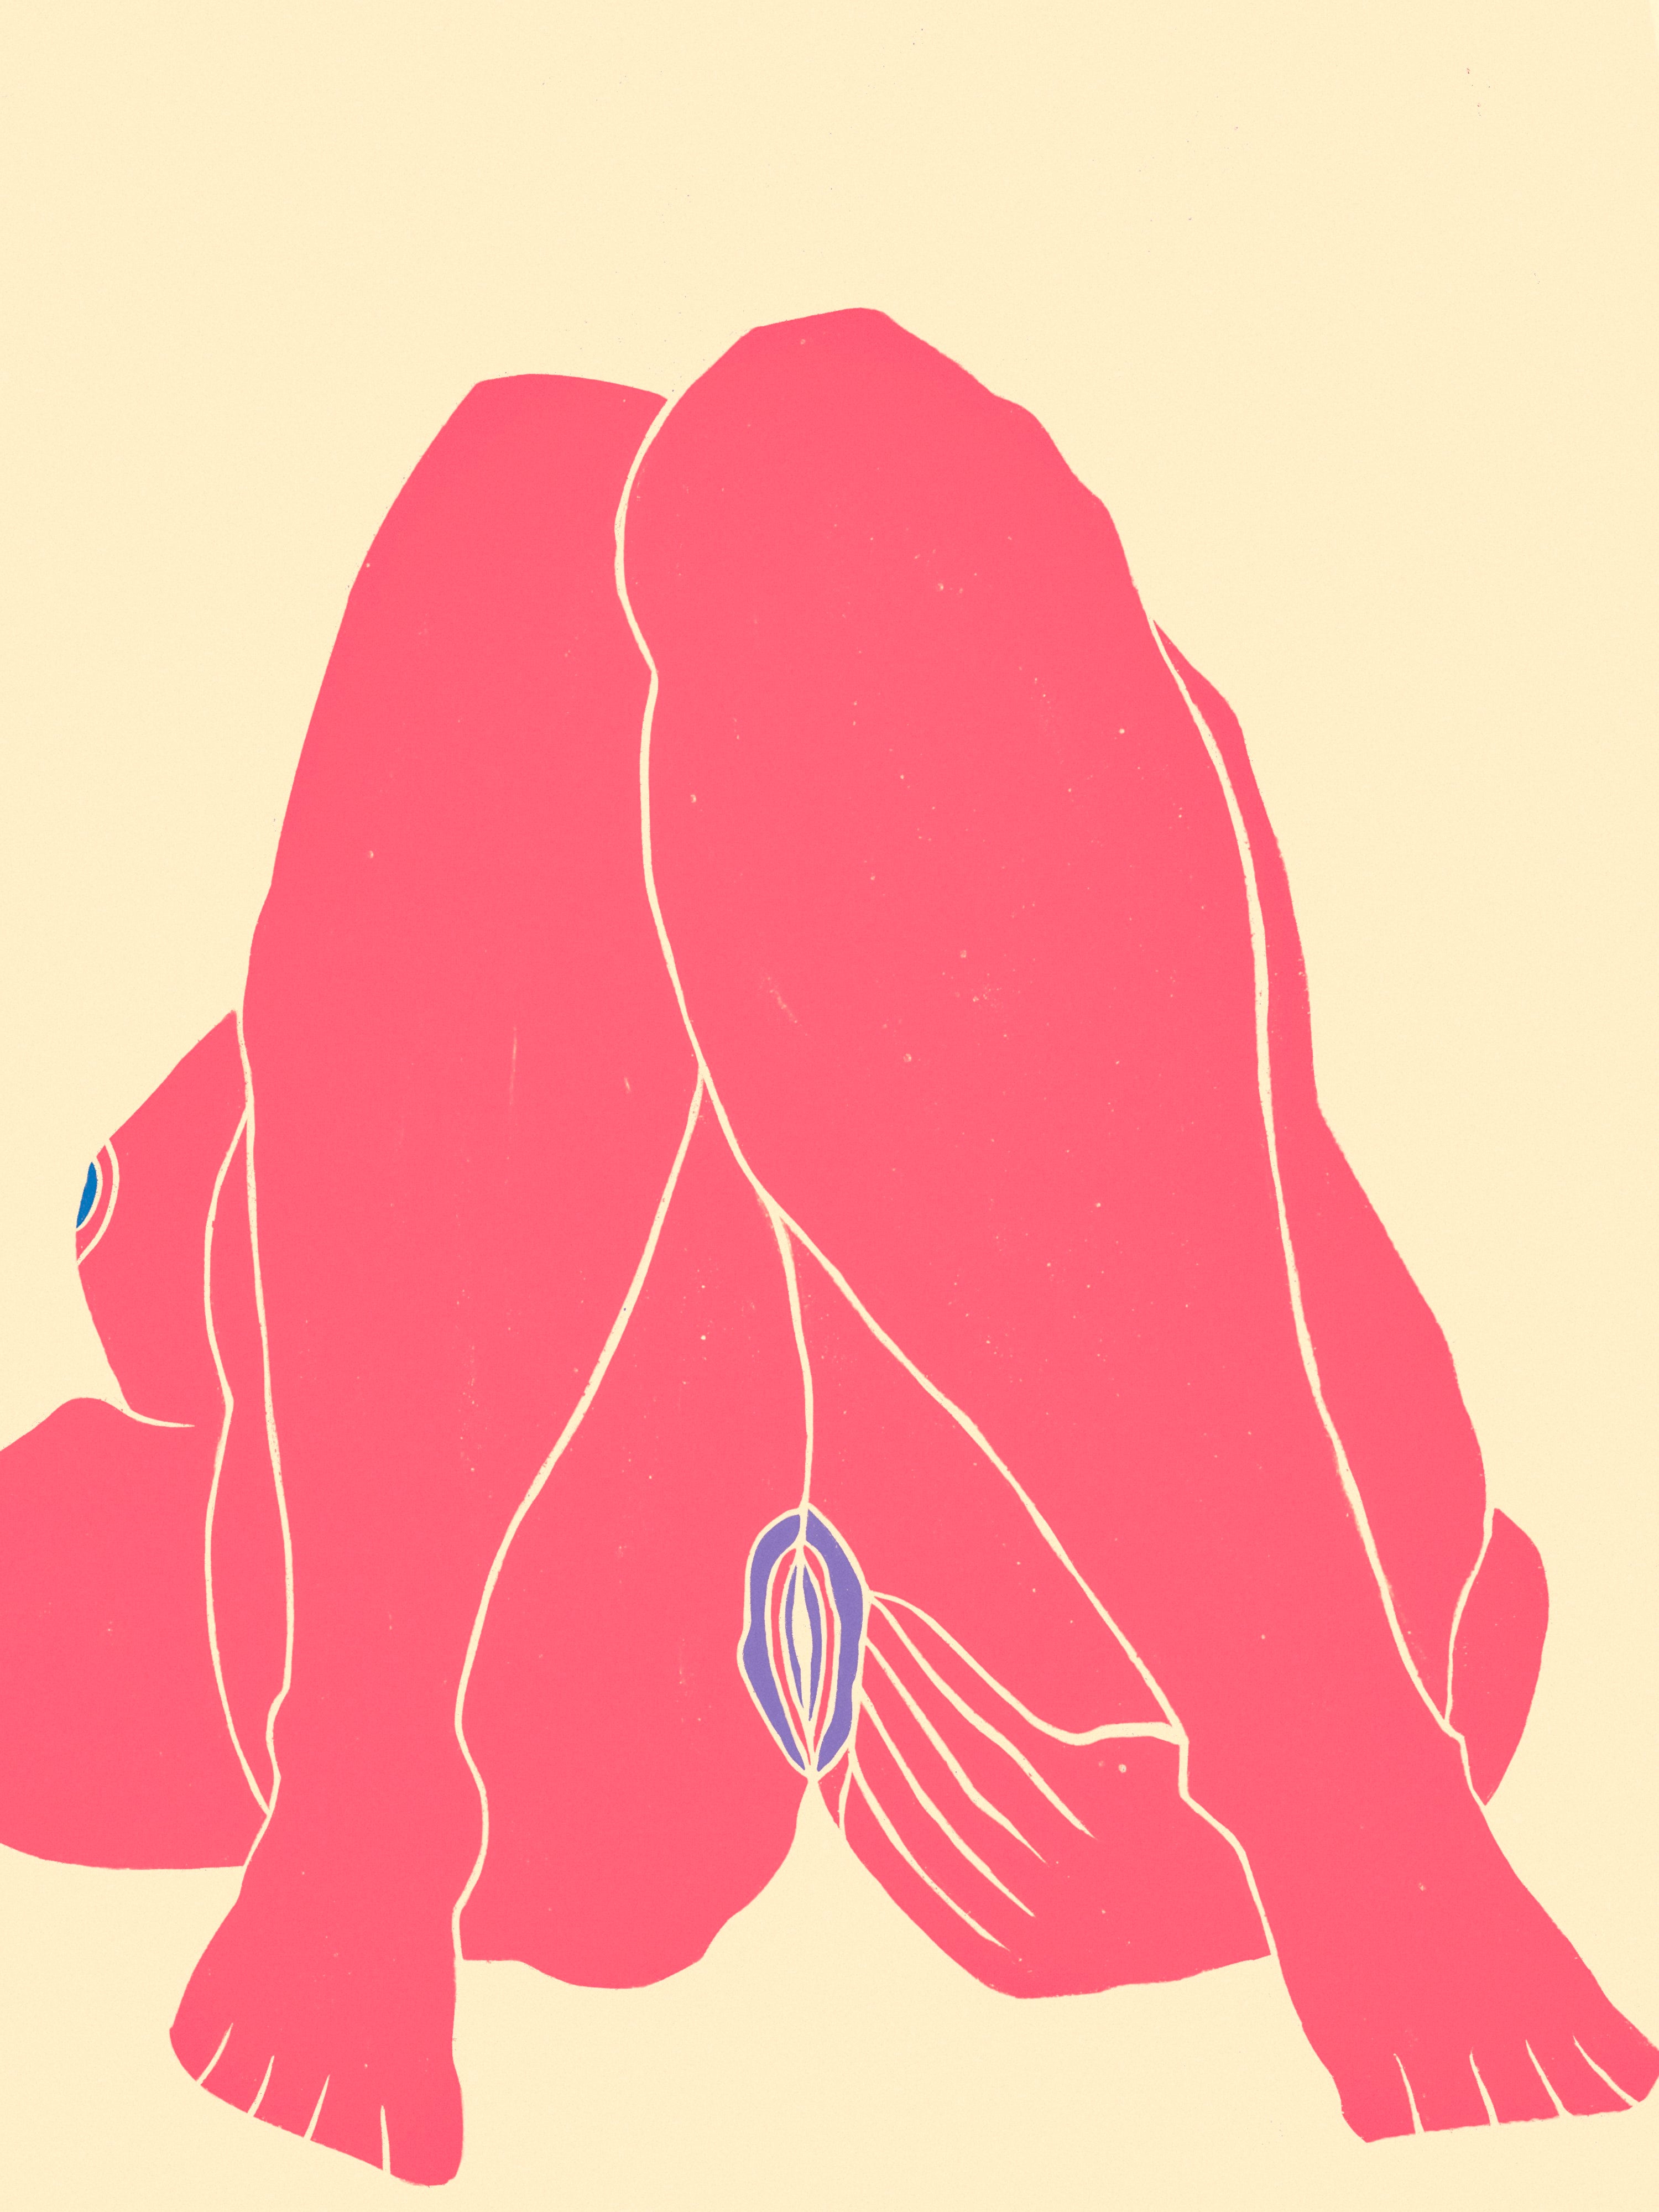 Hvordan onanerer man når man har en vulva